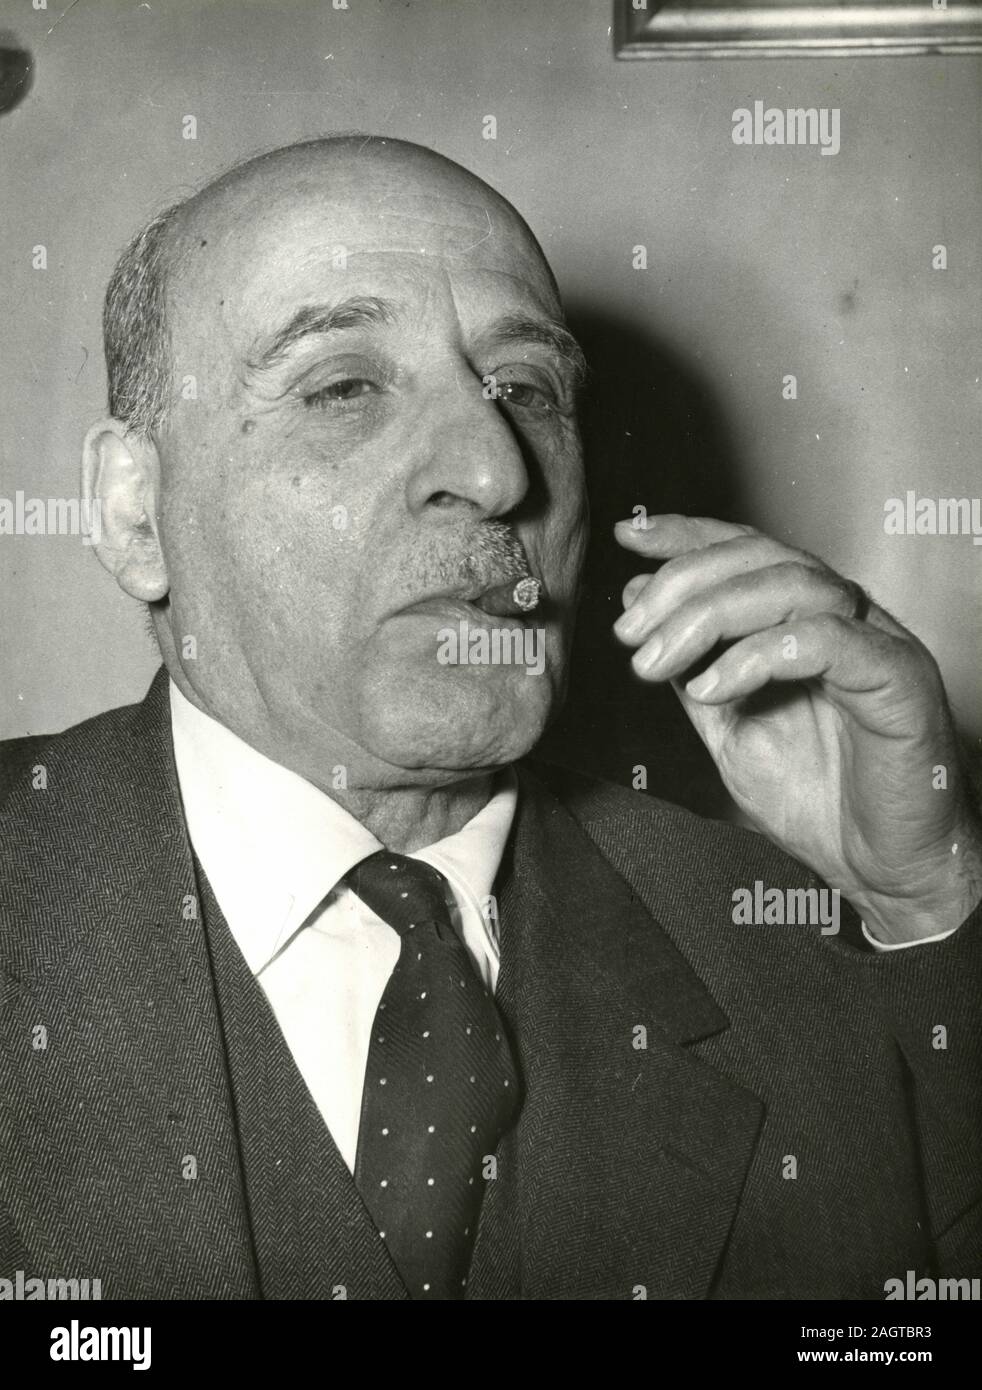 Italian politician Minister Umberto Tupini smoking cigar, Rome, Italy 1960s Stock Photo